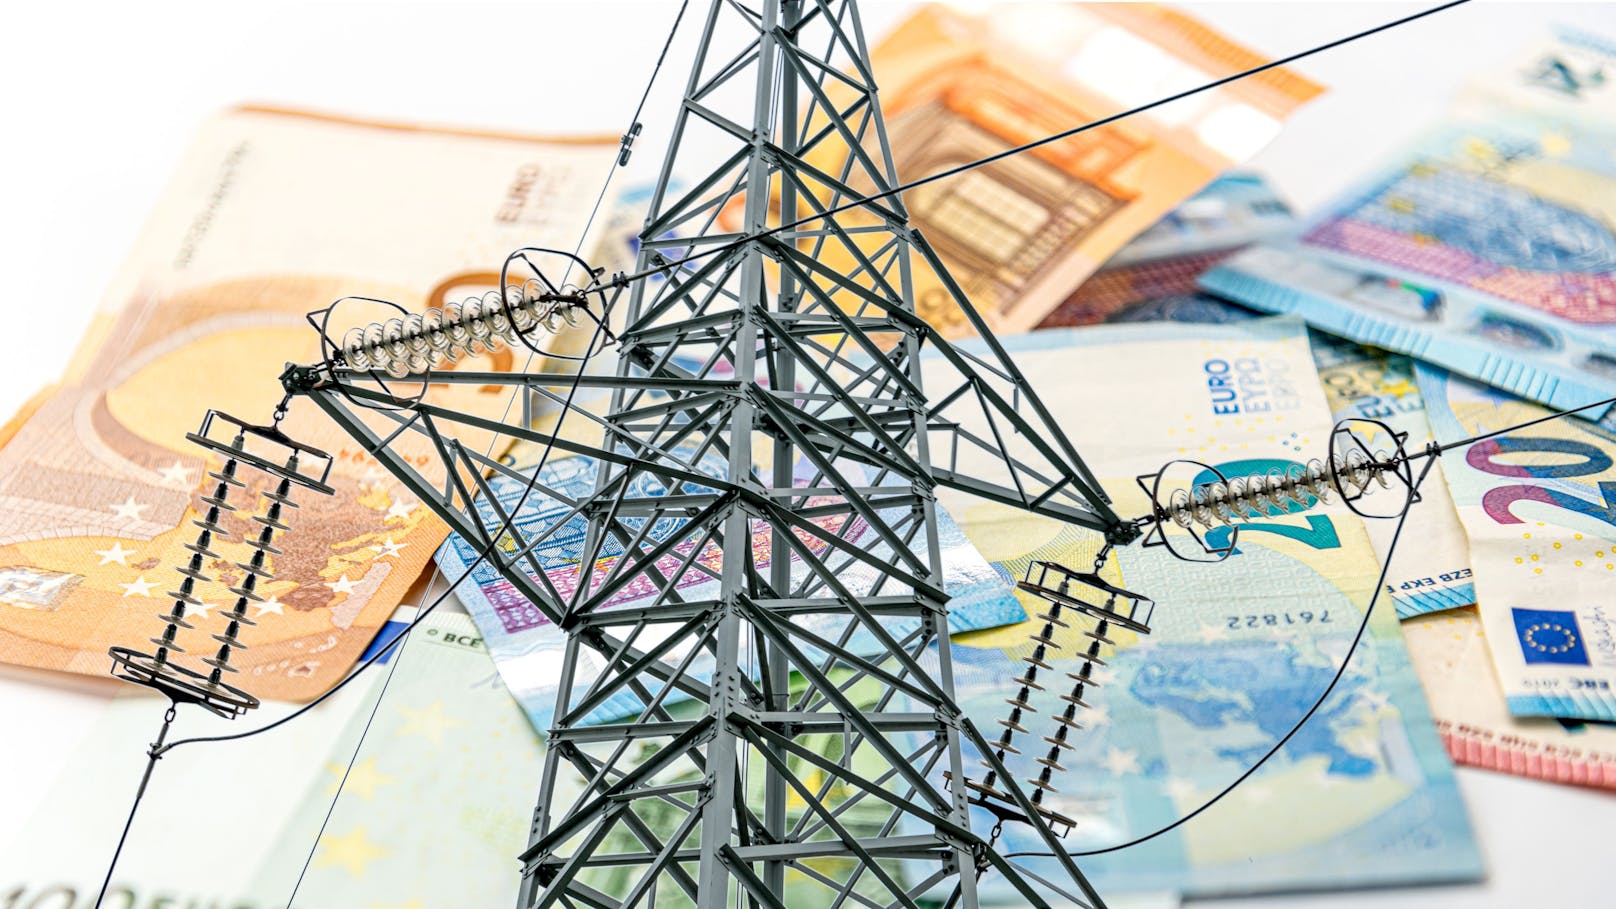 Nach einer starken Erhöhung der Stromnetzentgelte im Jänner und Februar bewirken Maßnahmen des Bundes ab 1. März eine spürbare Reduktion der Kostenbelastung.